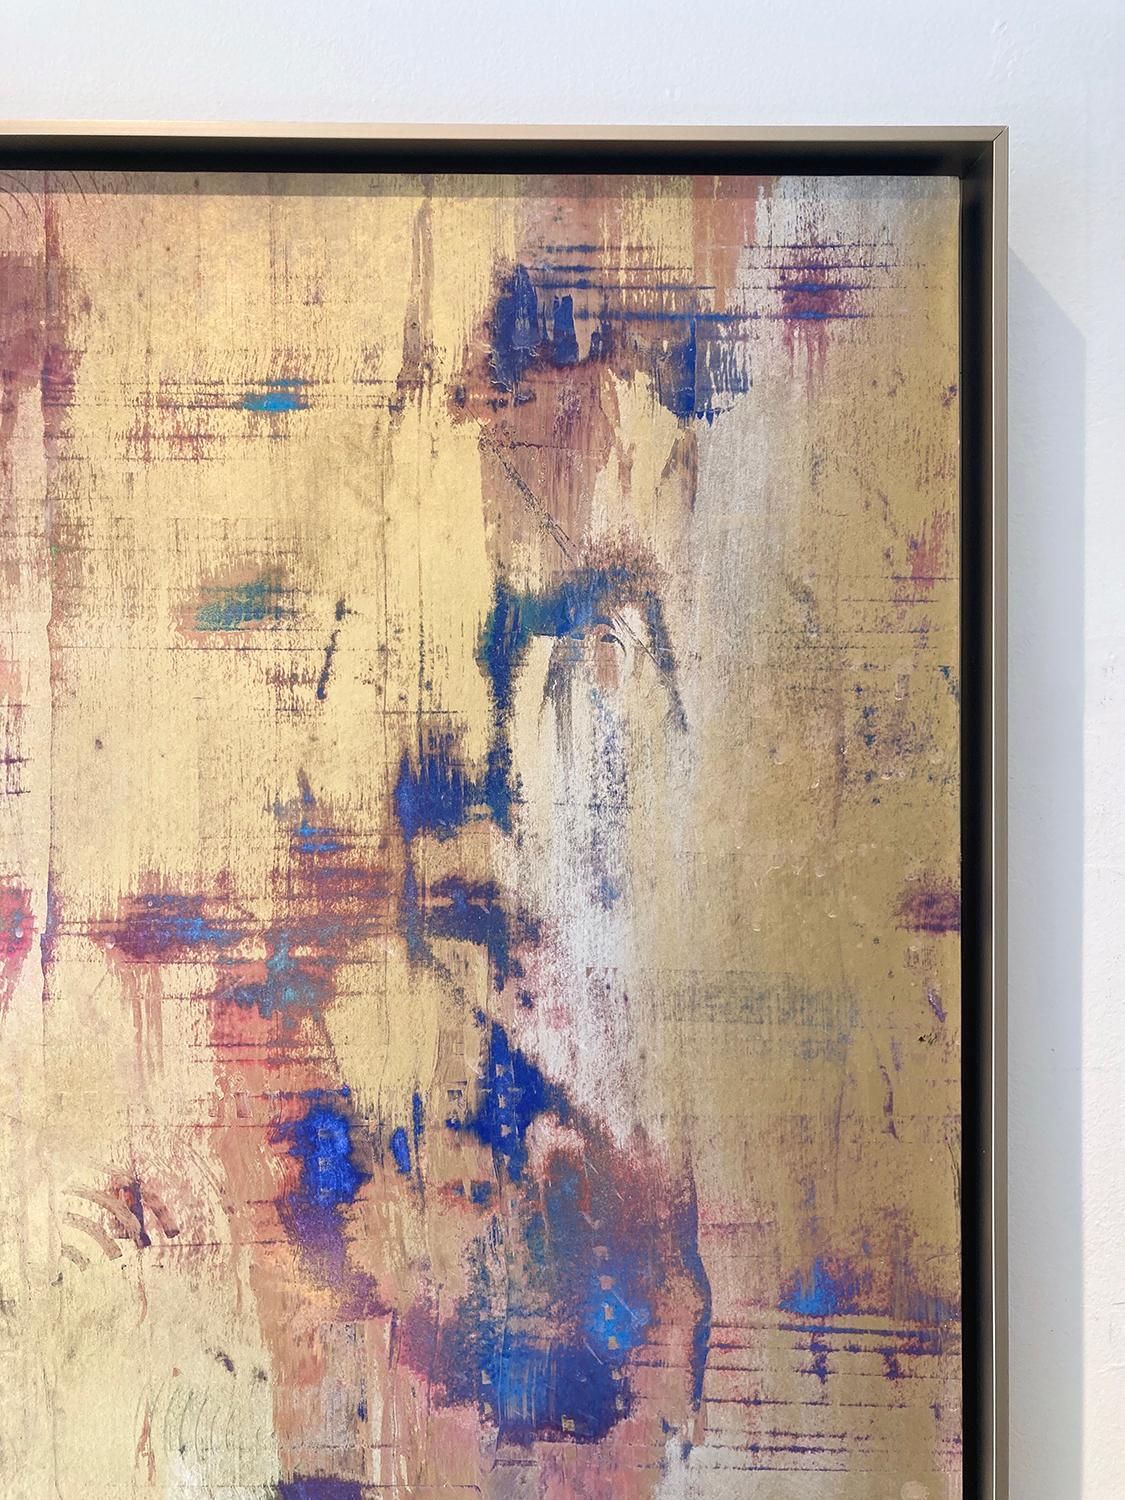 Gestische abstrakte expressionistische Malerei auf Archivpapier, das mit goldenem und silbernem Metallpulver und blauen, violetten und blaugrünen Farbakzenten auf eine Tafel aufgezogen wurde.
